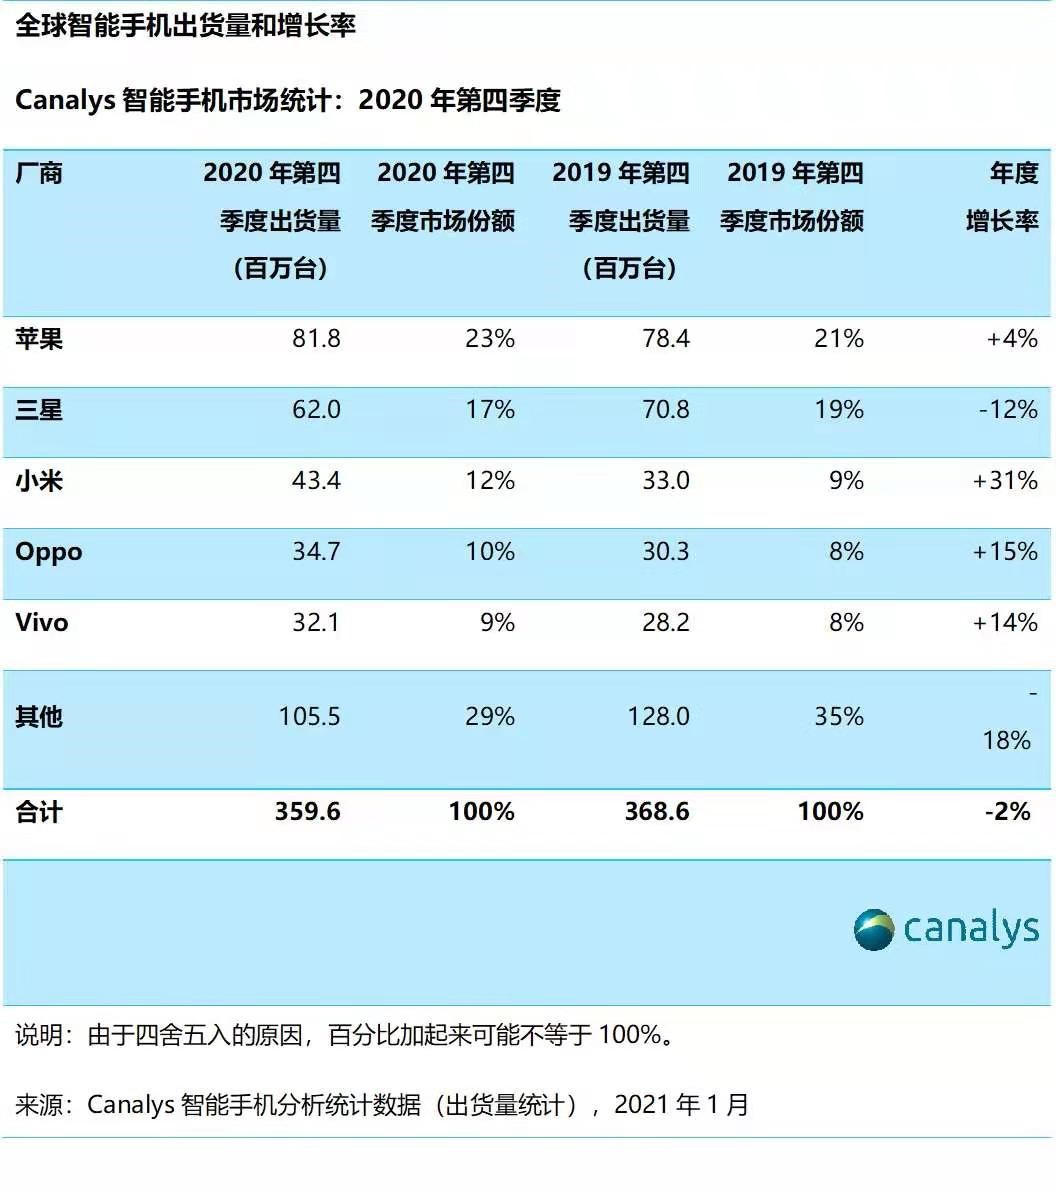 个推大数据2020年5G手机报告：华为以45.5%市占率排名第一